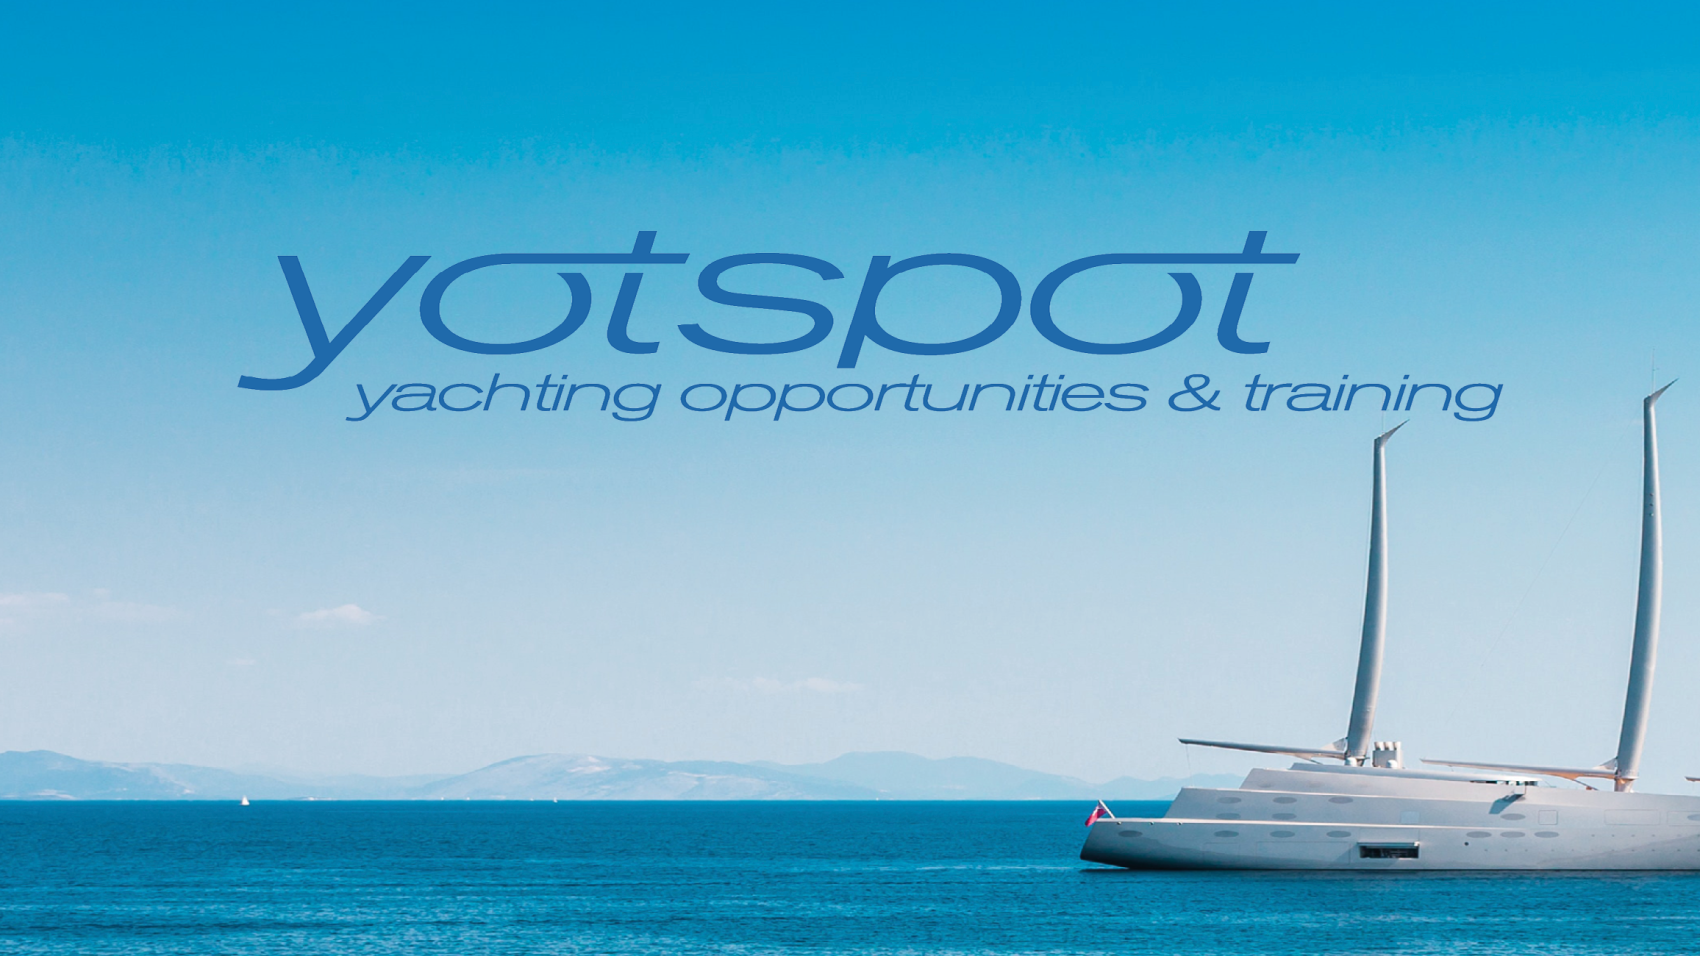 yotspot/crewpass partnership